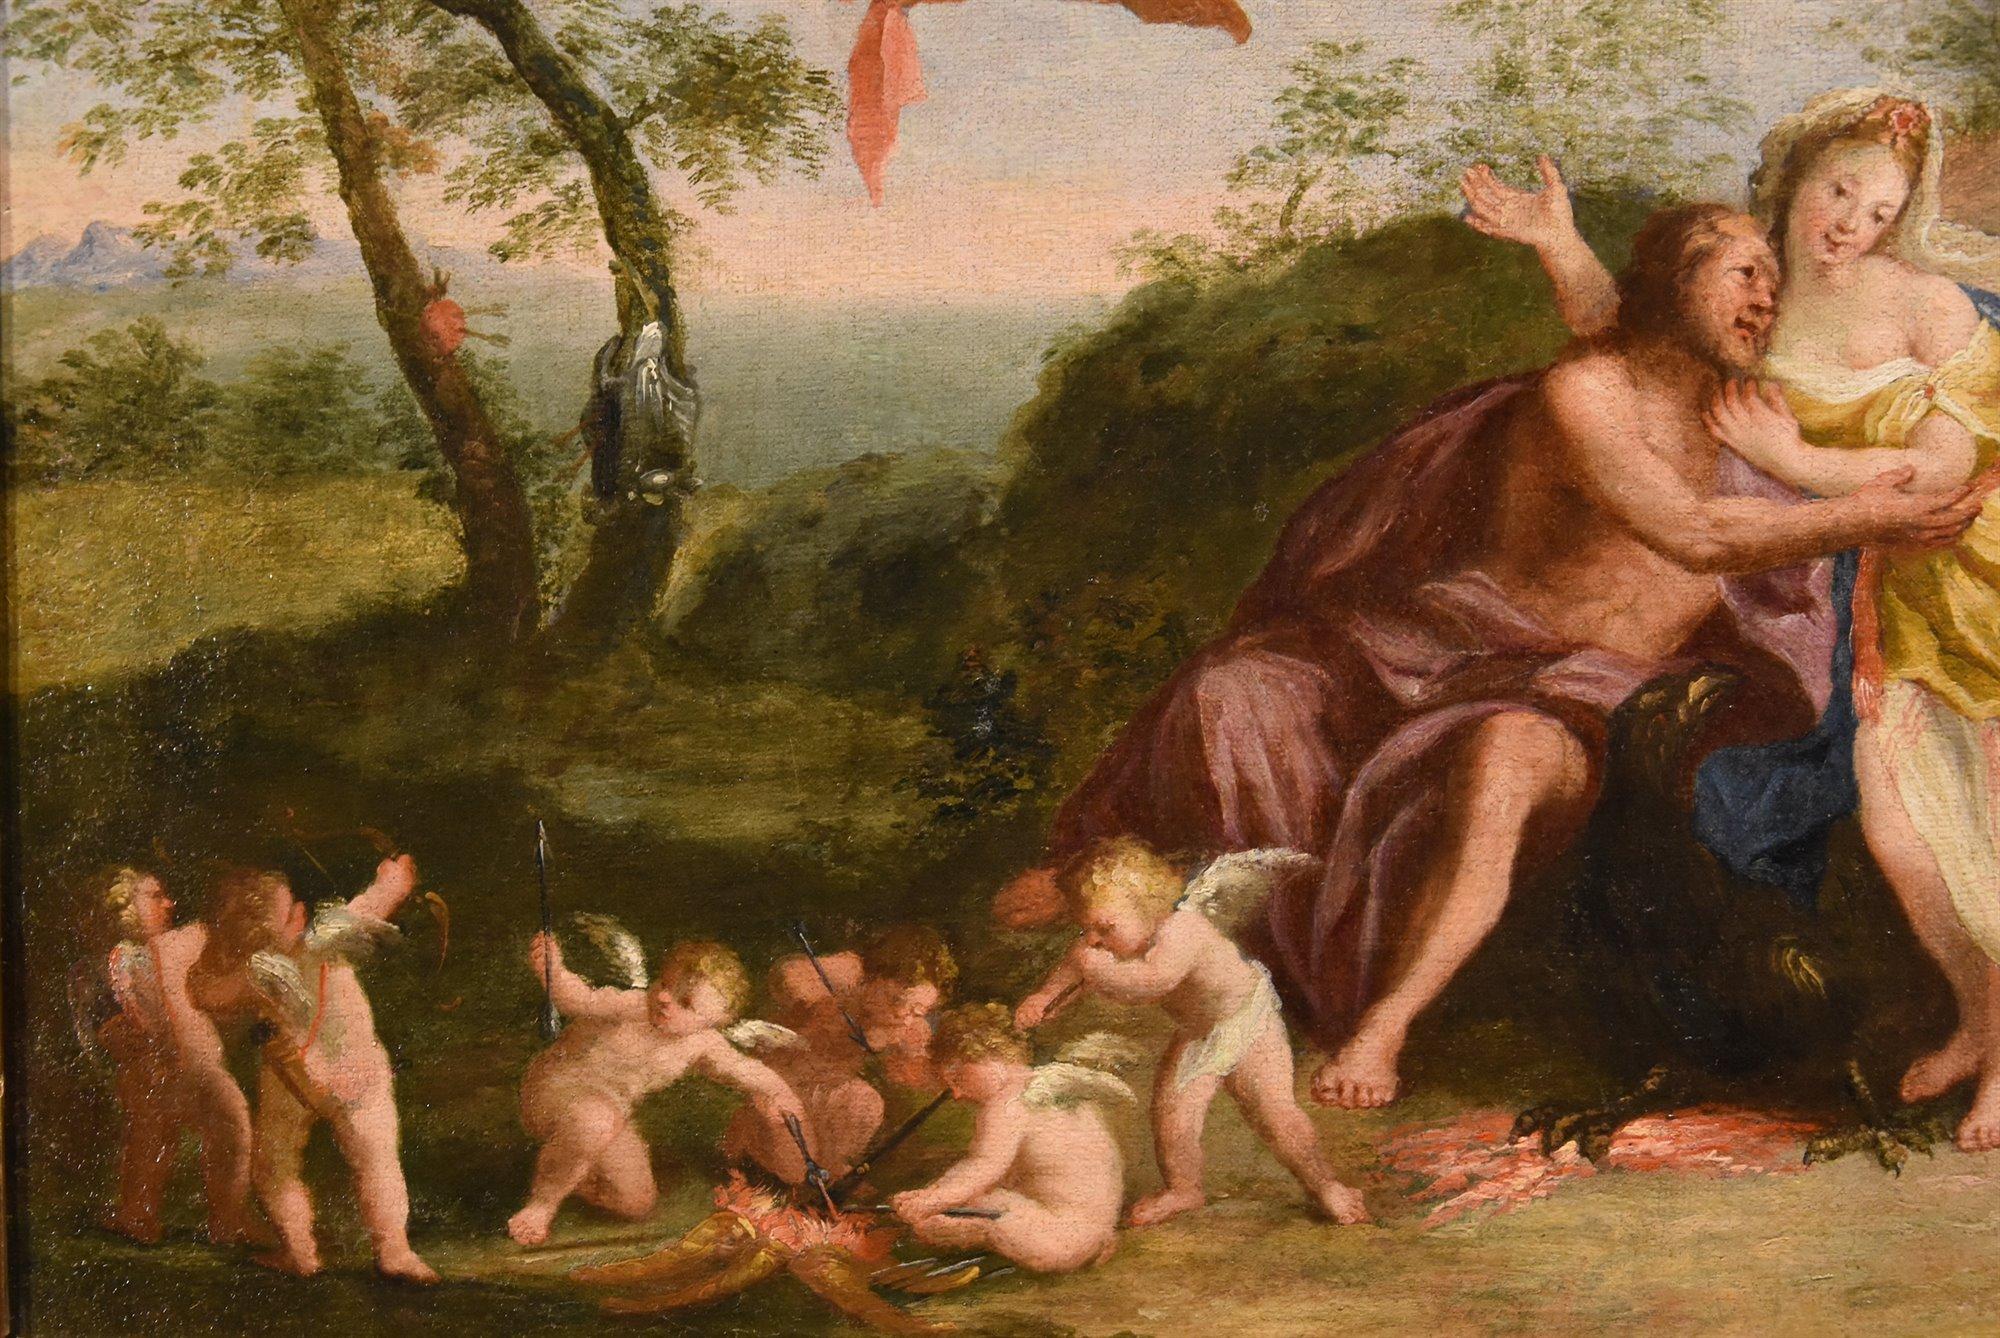 Mars Venus Albani Paint Oil on canvas 17th Century Old master Mythological For Sale 5